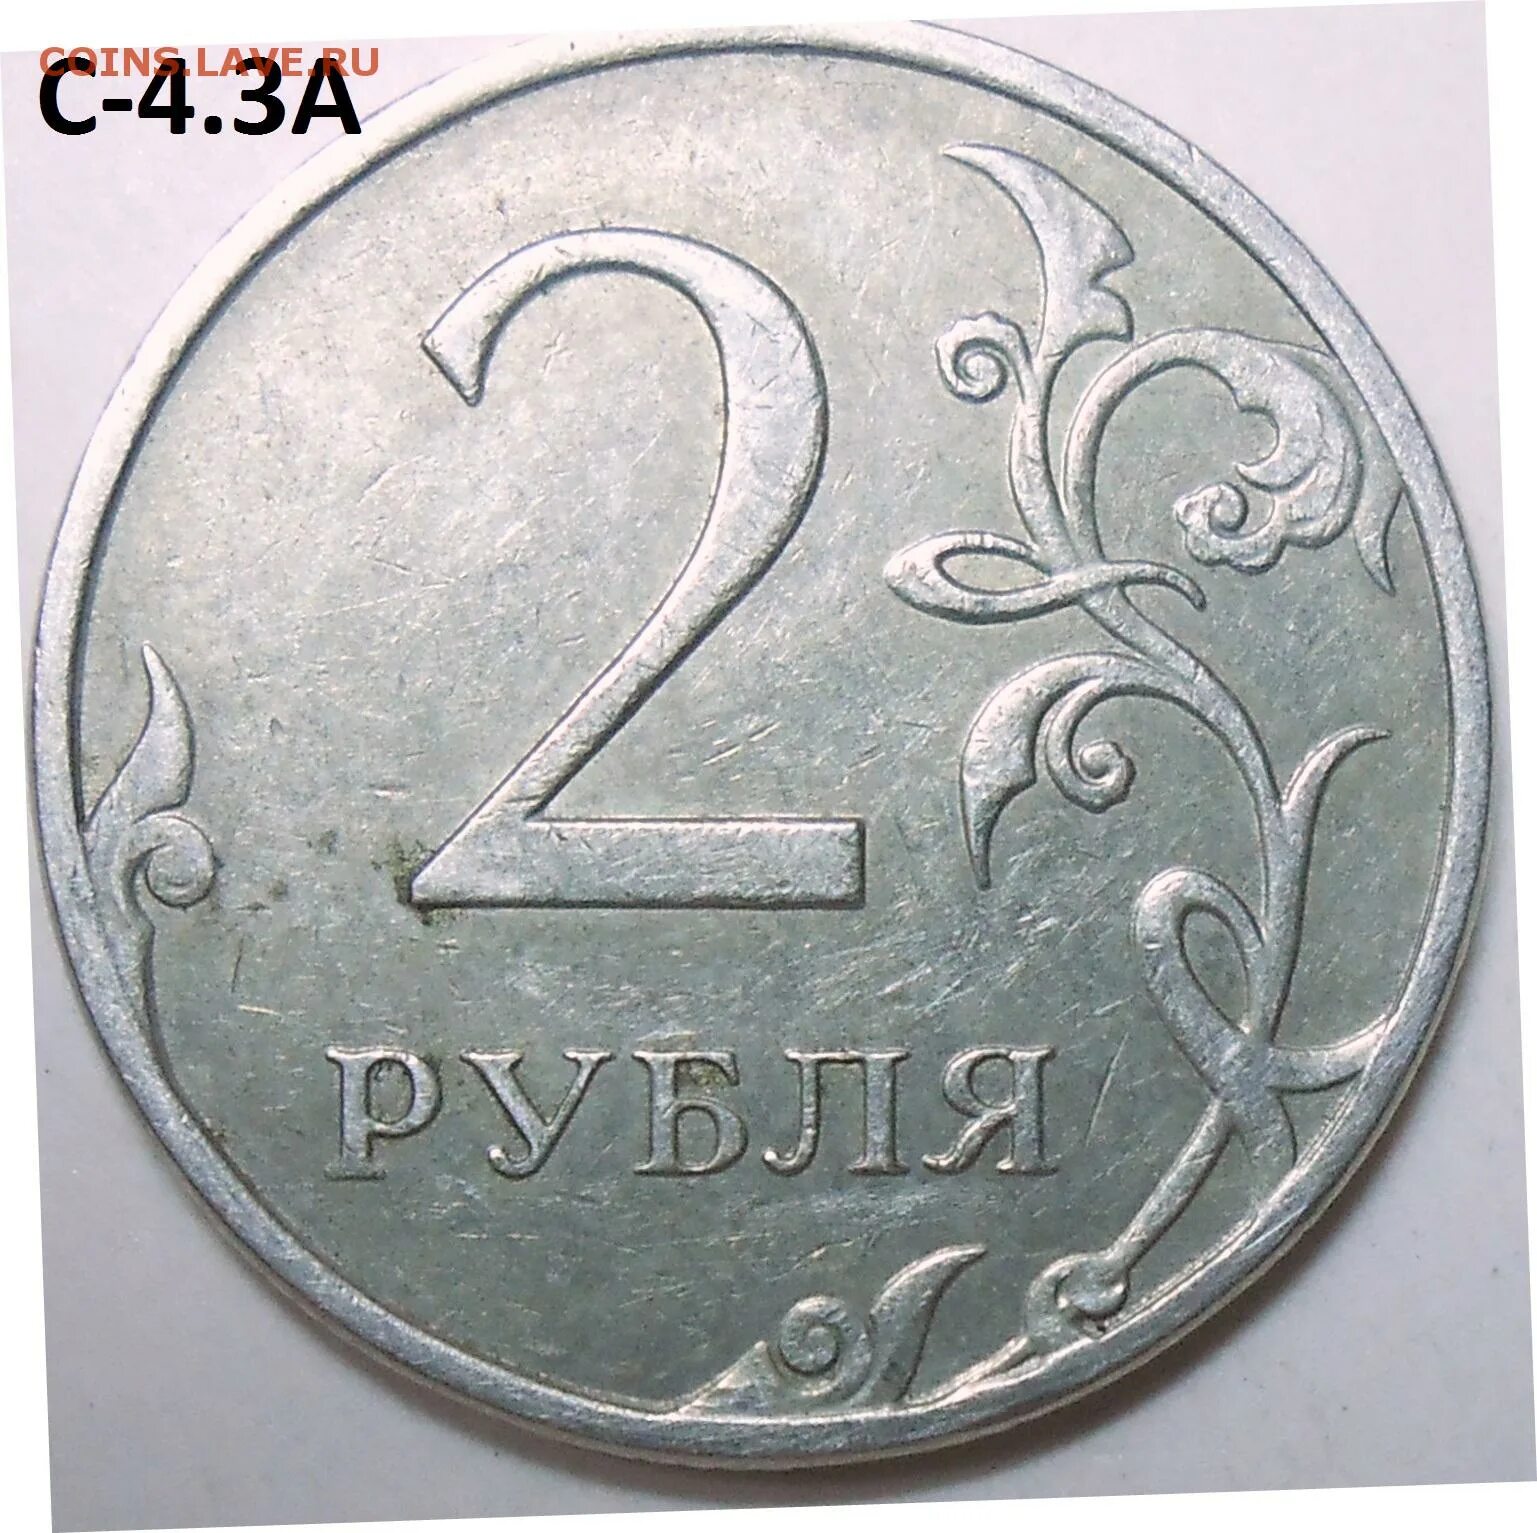 Руб т в руб кг. 2 Рубля 1997 ММД. 2 Руб 1997 ММД. 2 Рубля 1997 СПДМ золото. Редкий ли 2 рубль 1997.